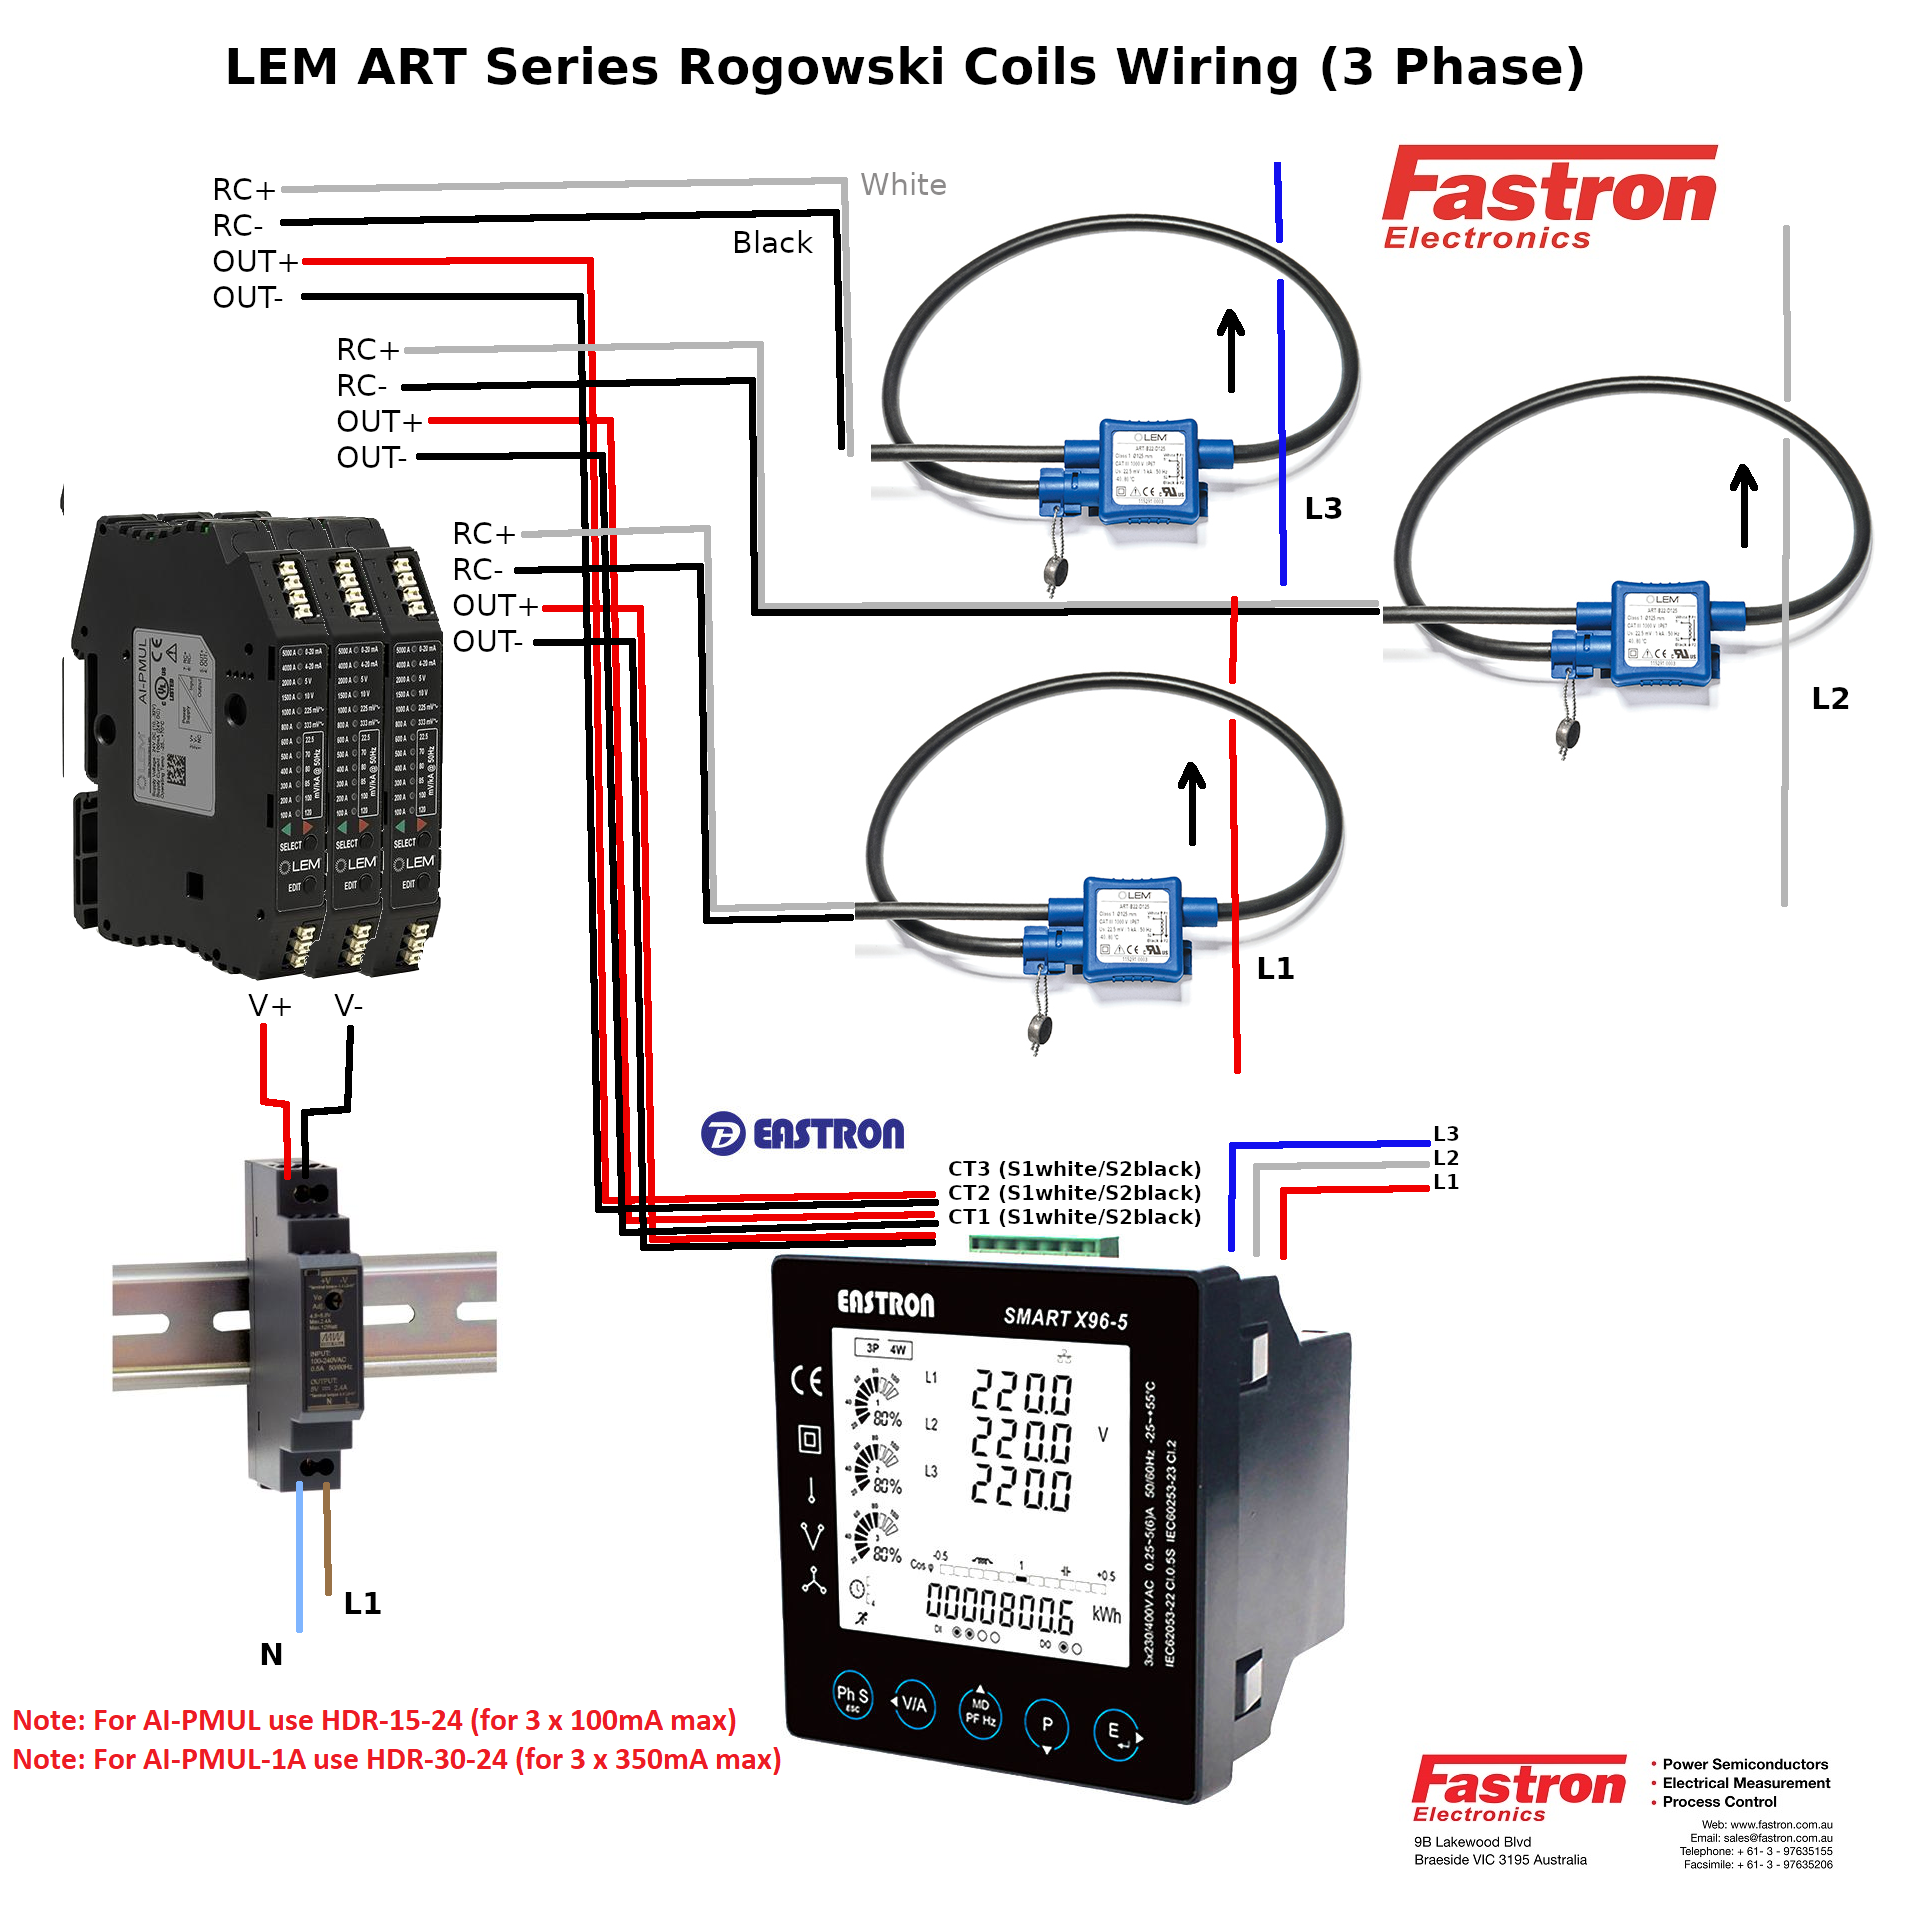 ART-B22-D300-SP4, AC Measurement Rogowski Coil (coil only). 30cm Diameter, Class 0.5, 3M Shielded Cable Connection